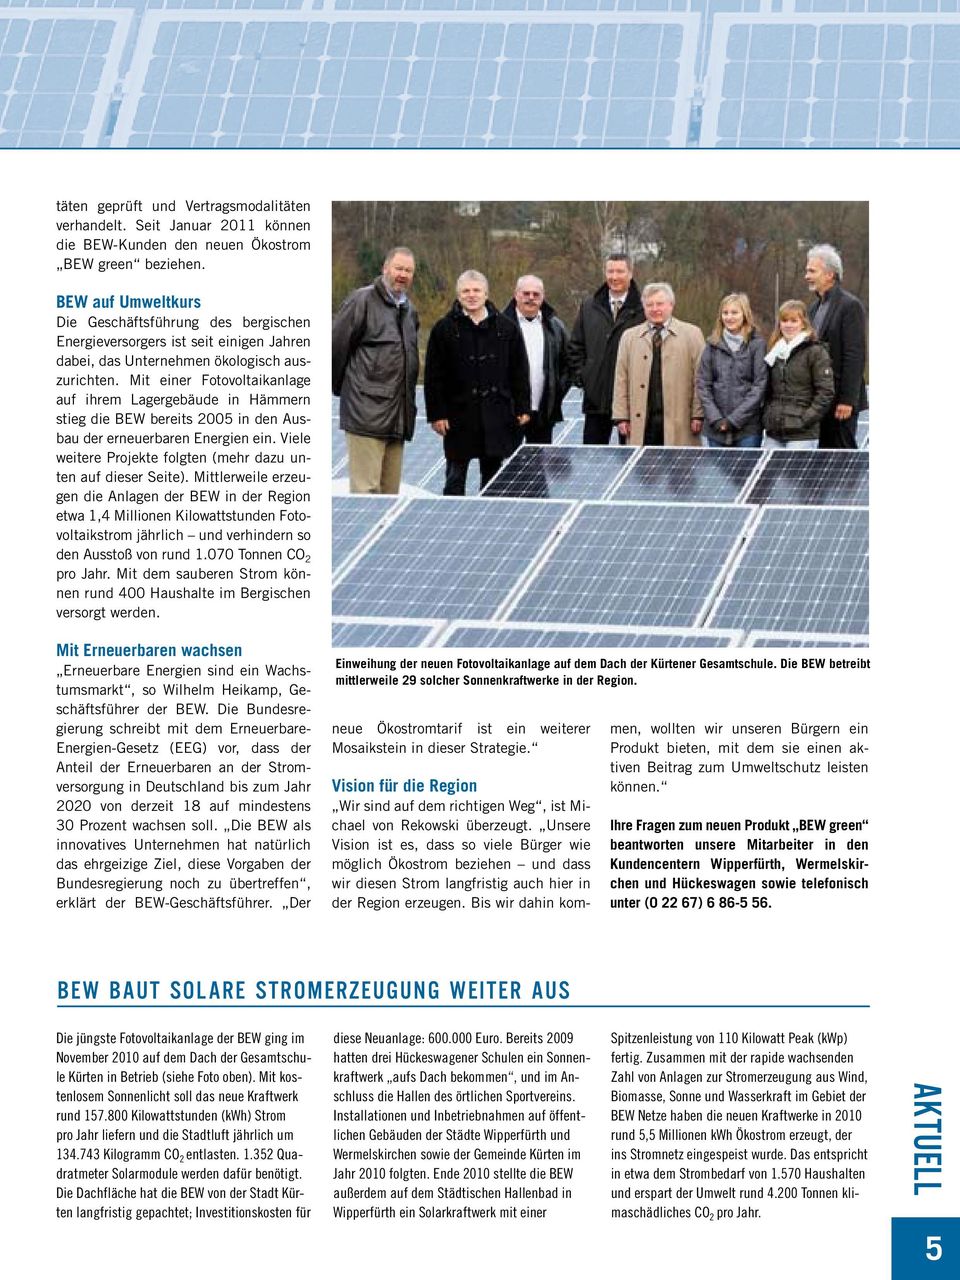 Mit einer Fotovoltaikanlage auf ihrem Lagergebäude in Hämmern stieg die BEW bereits 2005 in den Ausbau der erneuerbaren Energien ein. Viele weitere Projekte folgten (mehr dazu unten auf dieser Seite).